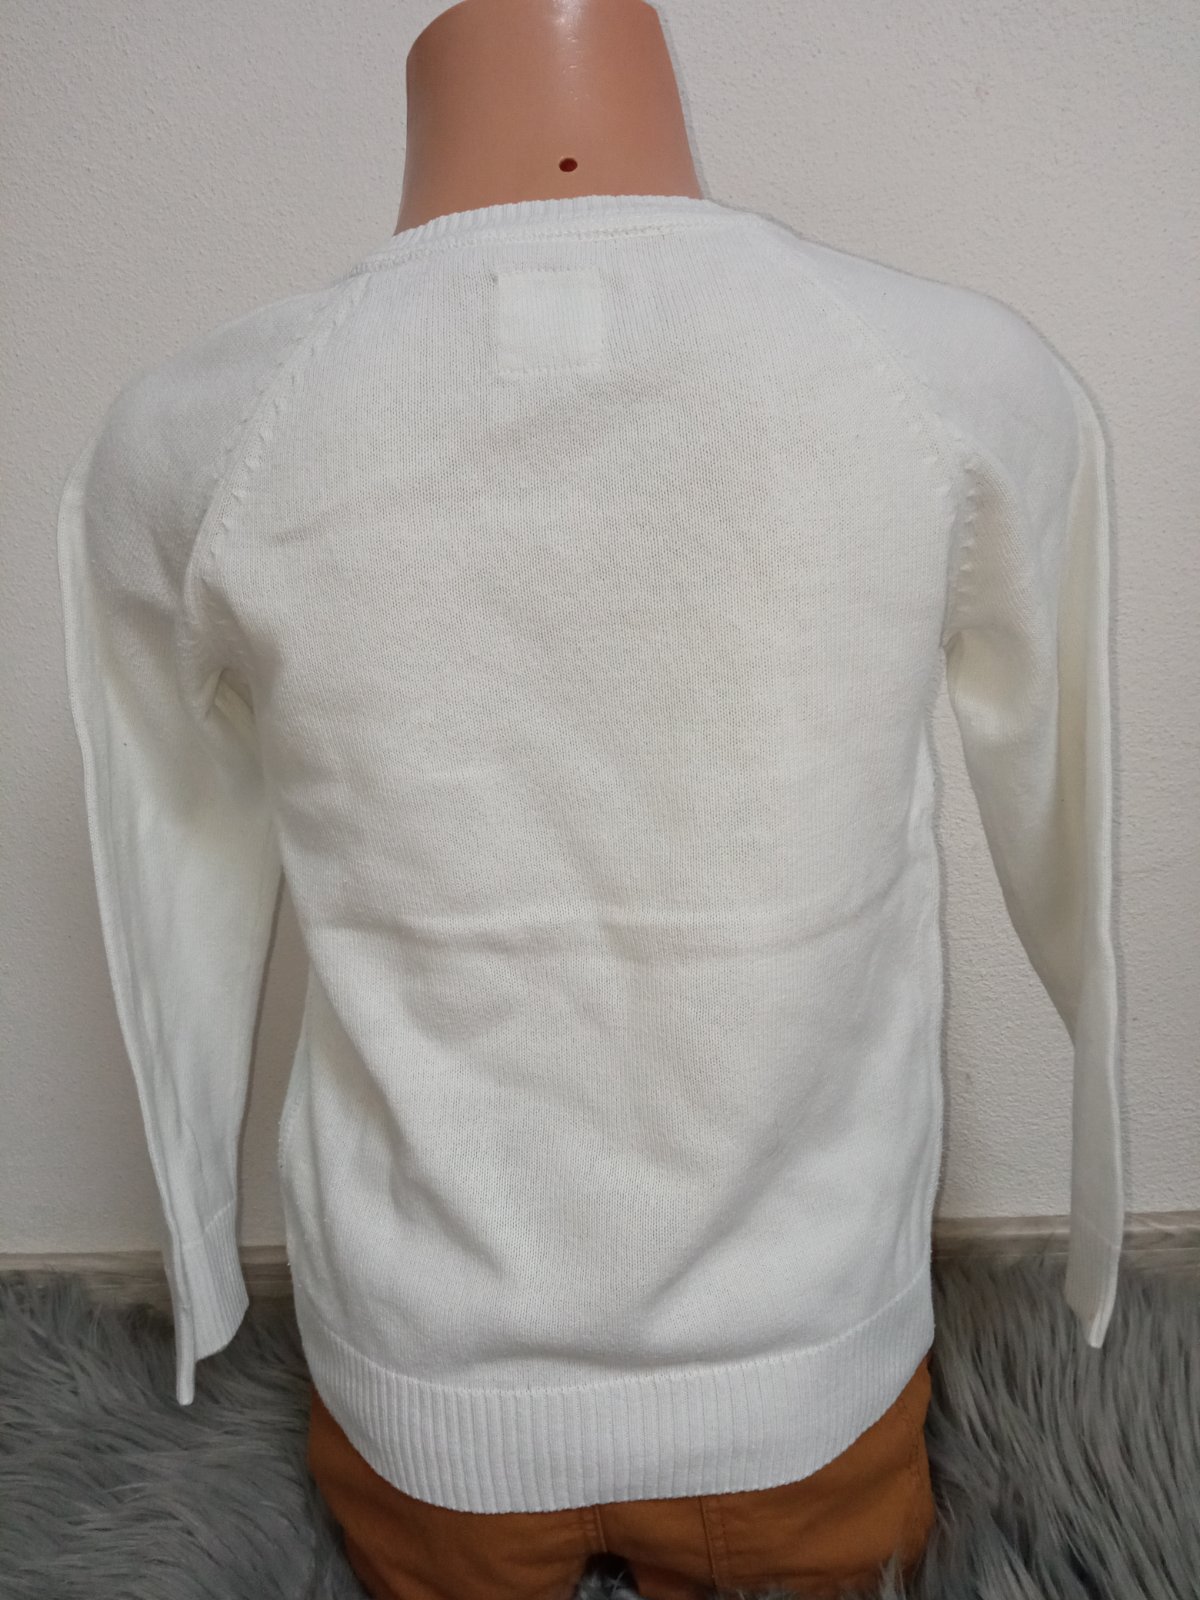 Biely vzorovaný sveter (110-116)